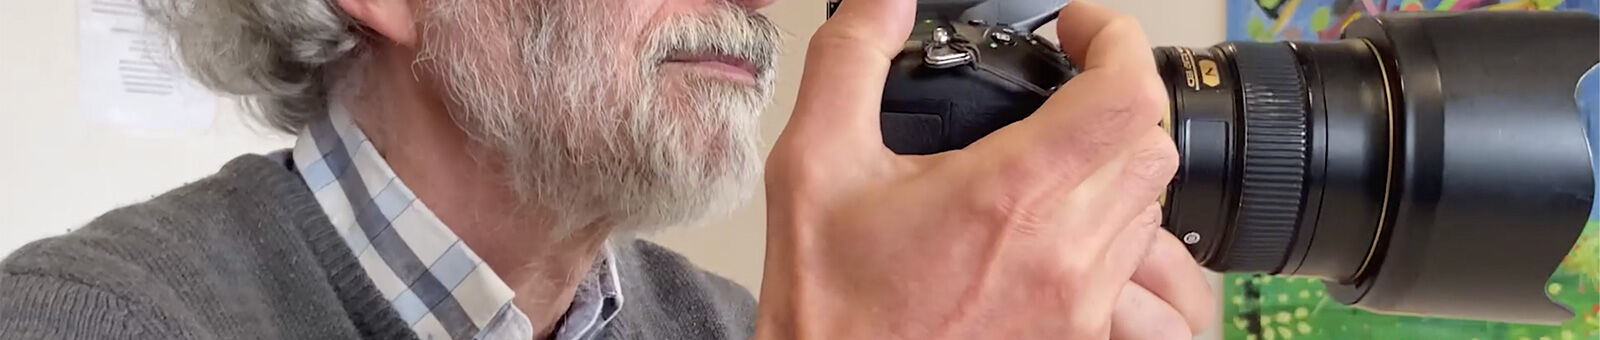 Un homme aux cheveux gris regarde un appareil photo